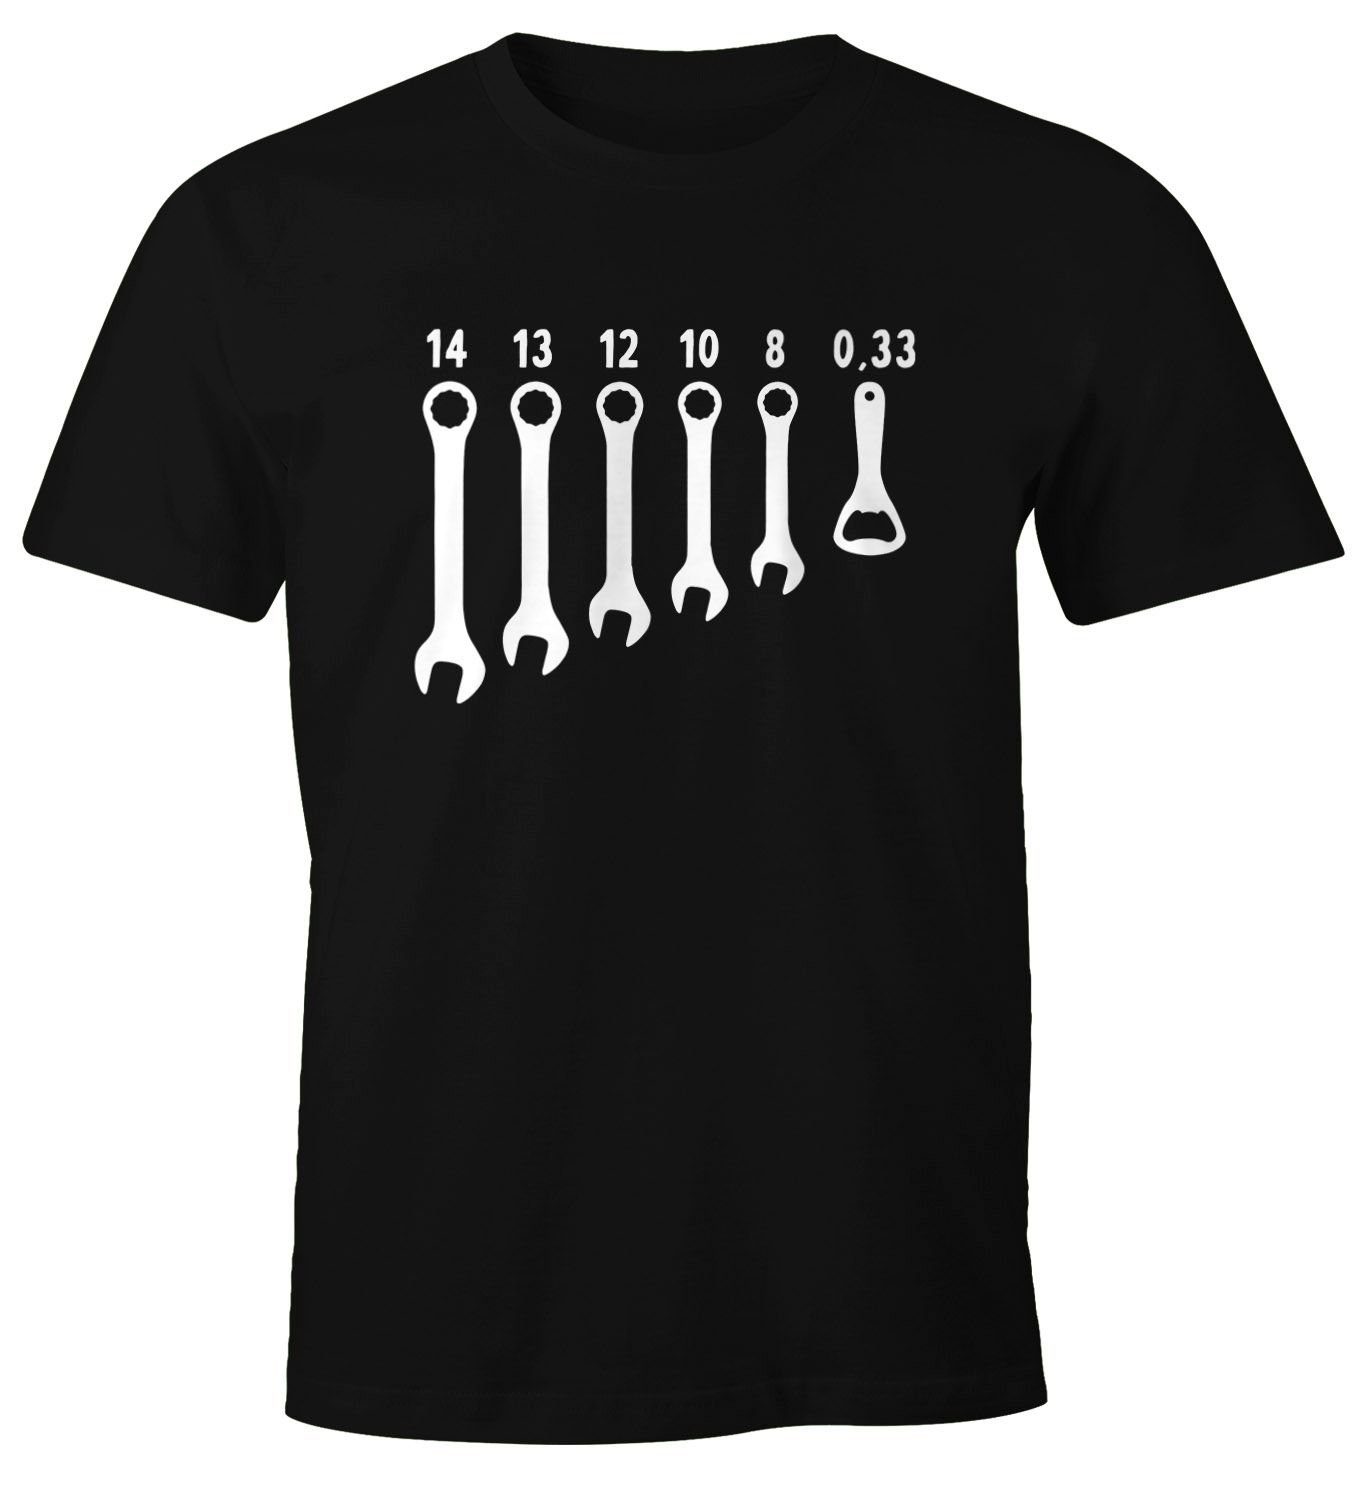 MoonWorks Moonworks® Fun-Shirt Flaschenöffner Schraubenschlüssel schwarz T-Shirt Herren Fun-Shirt mit Print-Shirt Herren Bieröffner Print